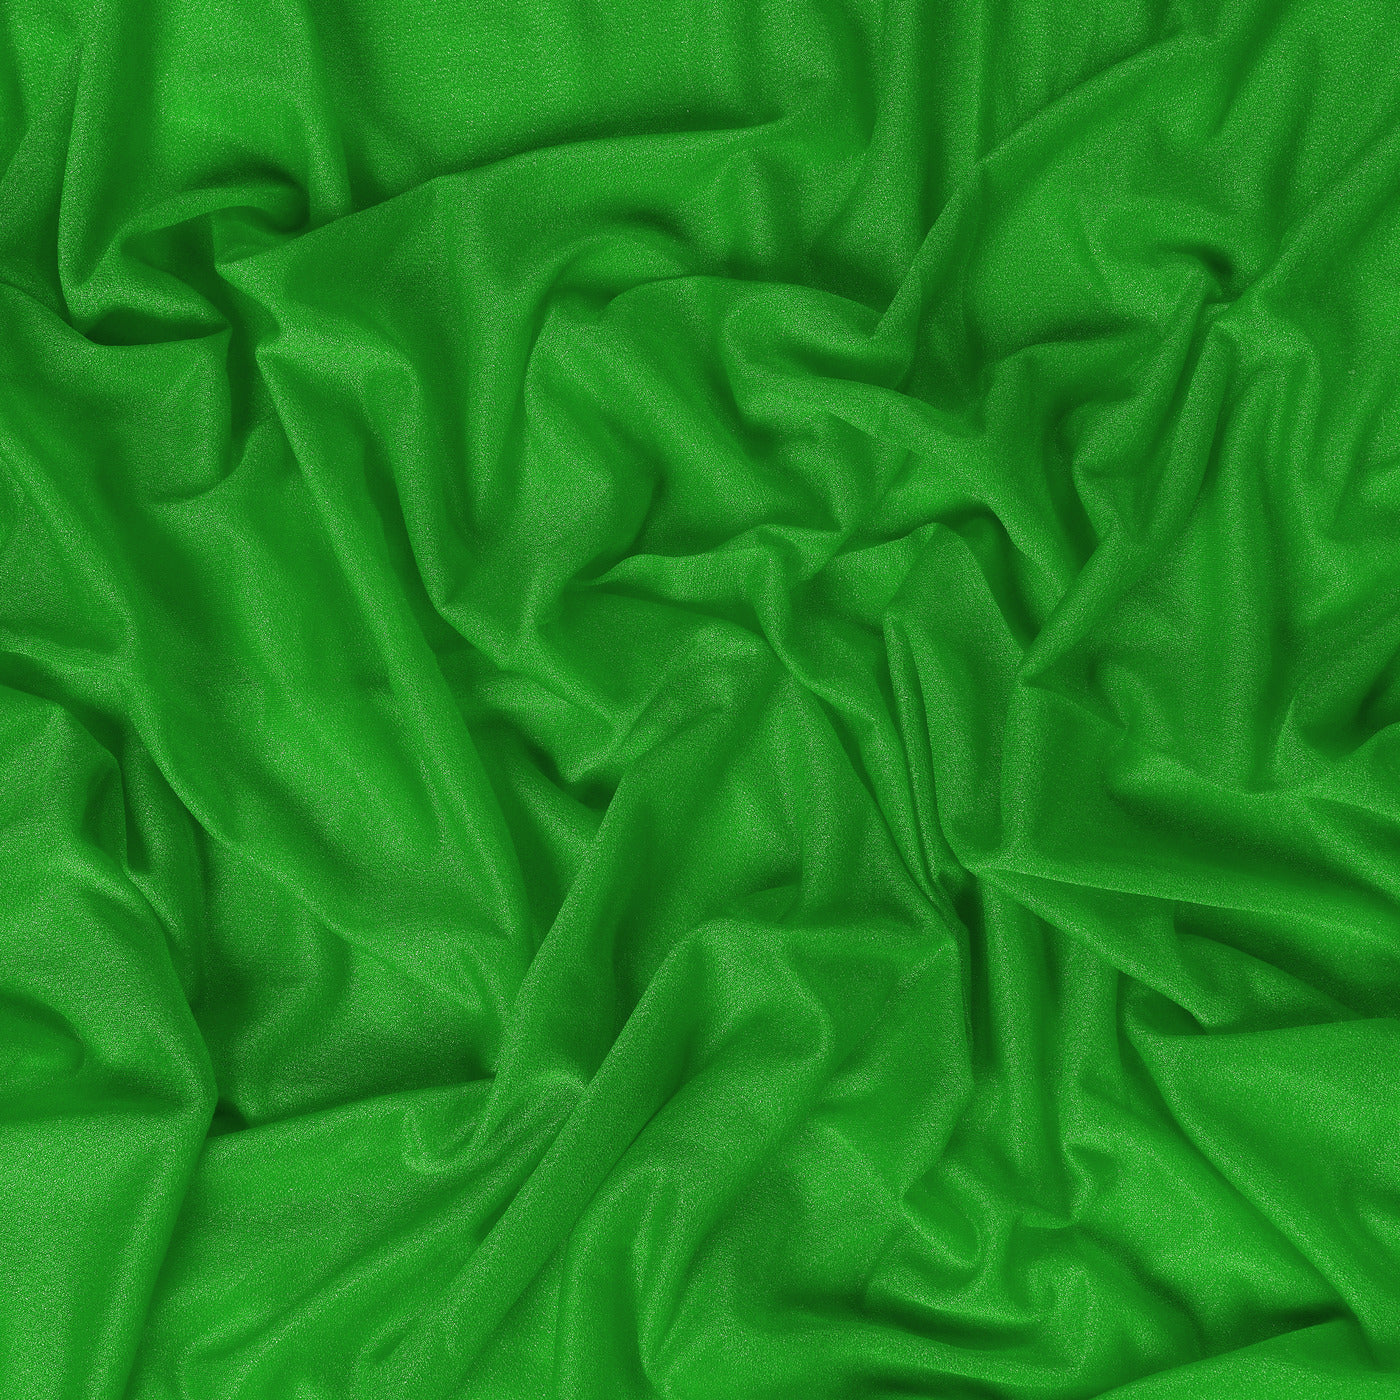 Green,f7050a0c-595c-4aef-b233-aefa28a76665